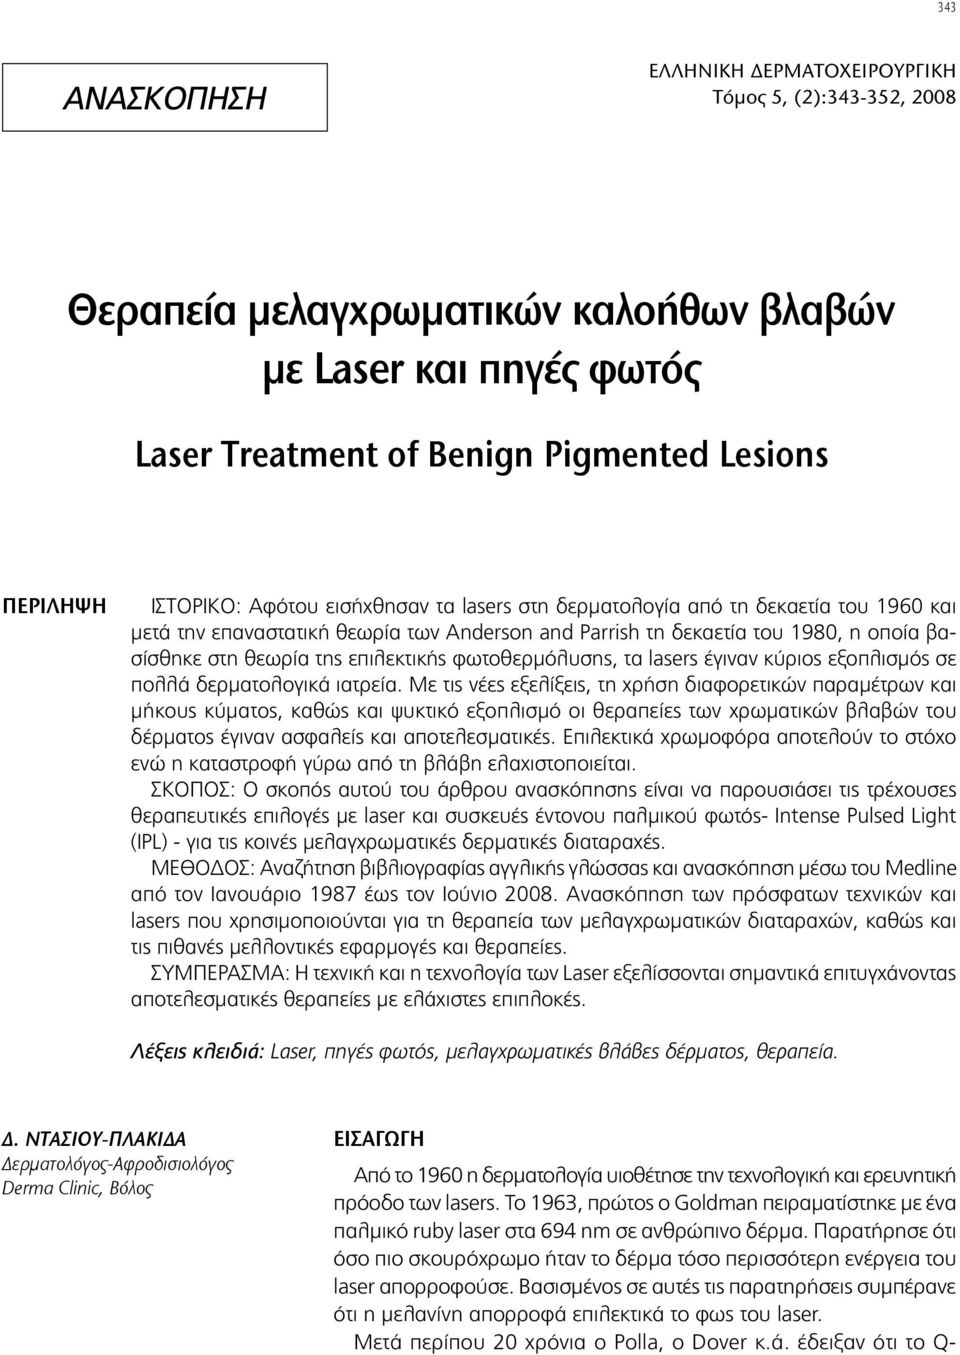 φωτοθερμόλυσης, τα lasers έγιναν κύριος εξοπλισμός σε πολλά δερματολογικά ιατρεία.